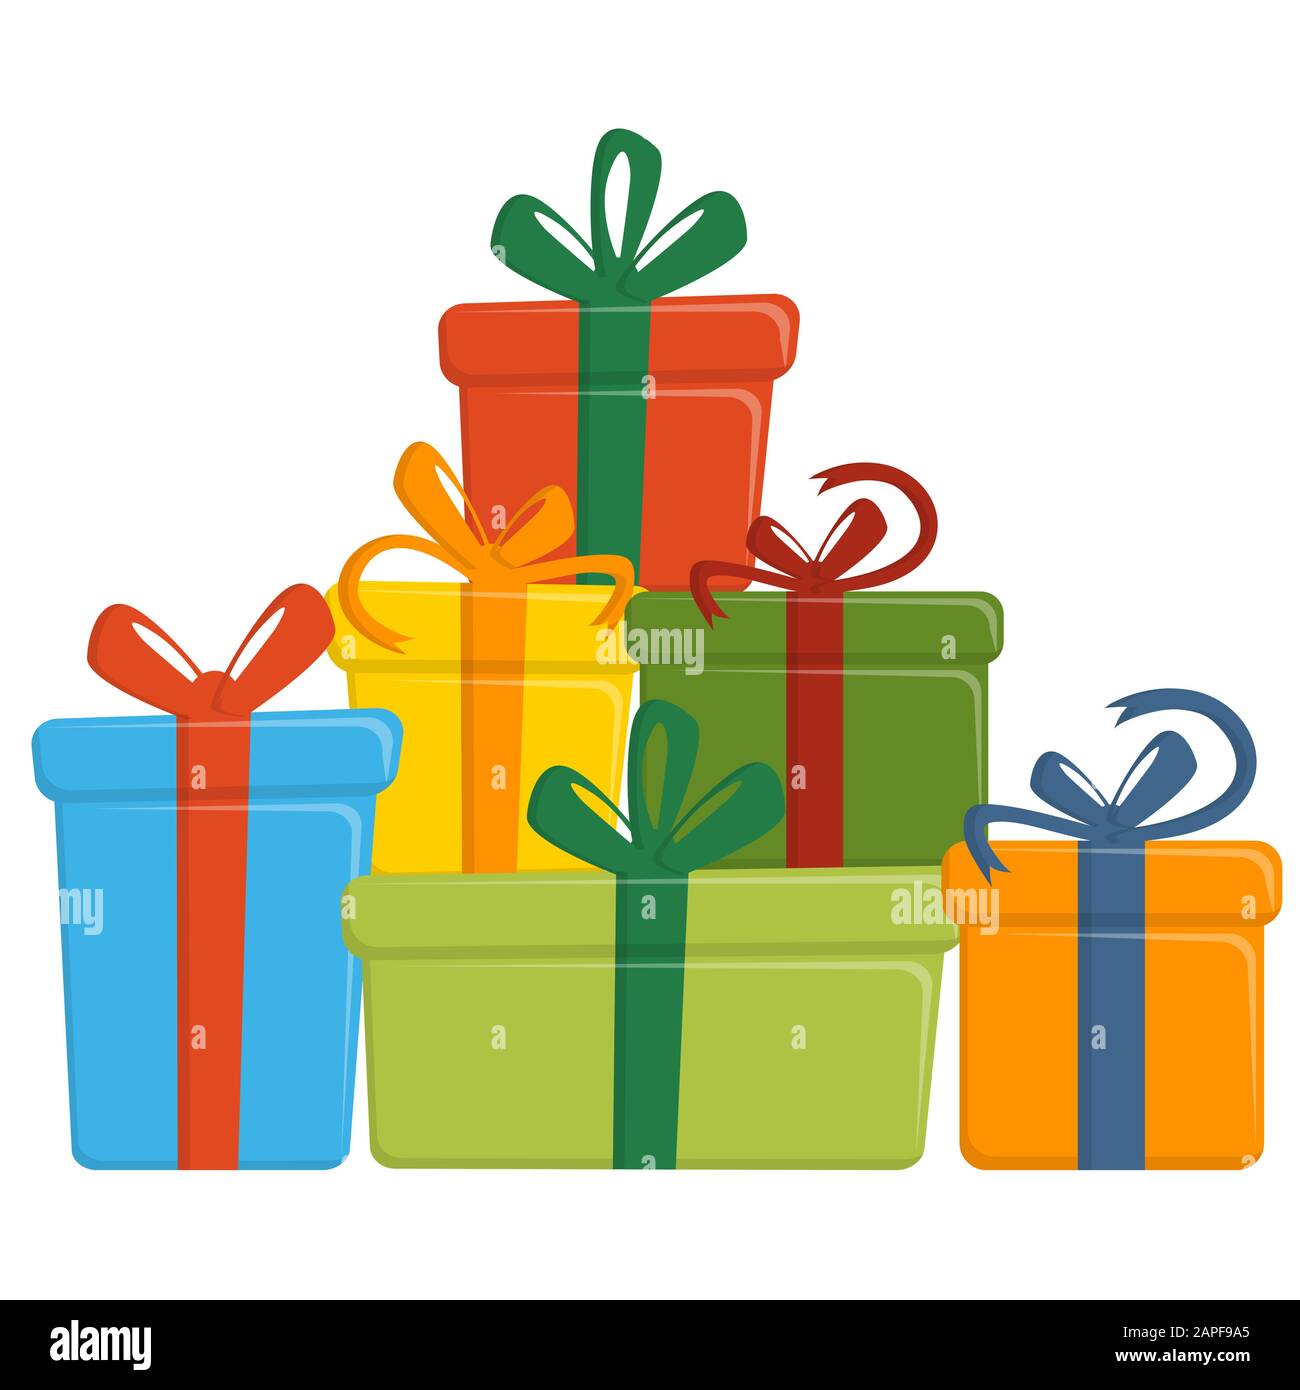 Ein Haufen Weihnachtsgeschenke mit farbigem Verpackungspapier Stock Vektor